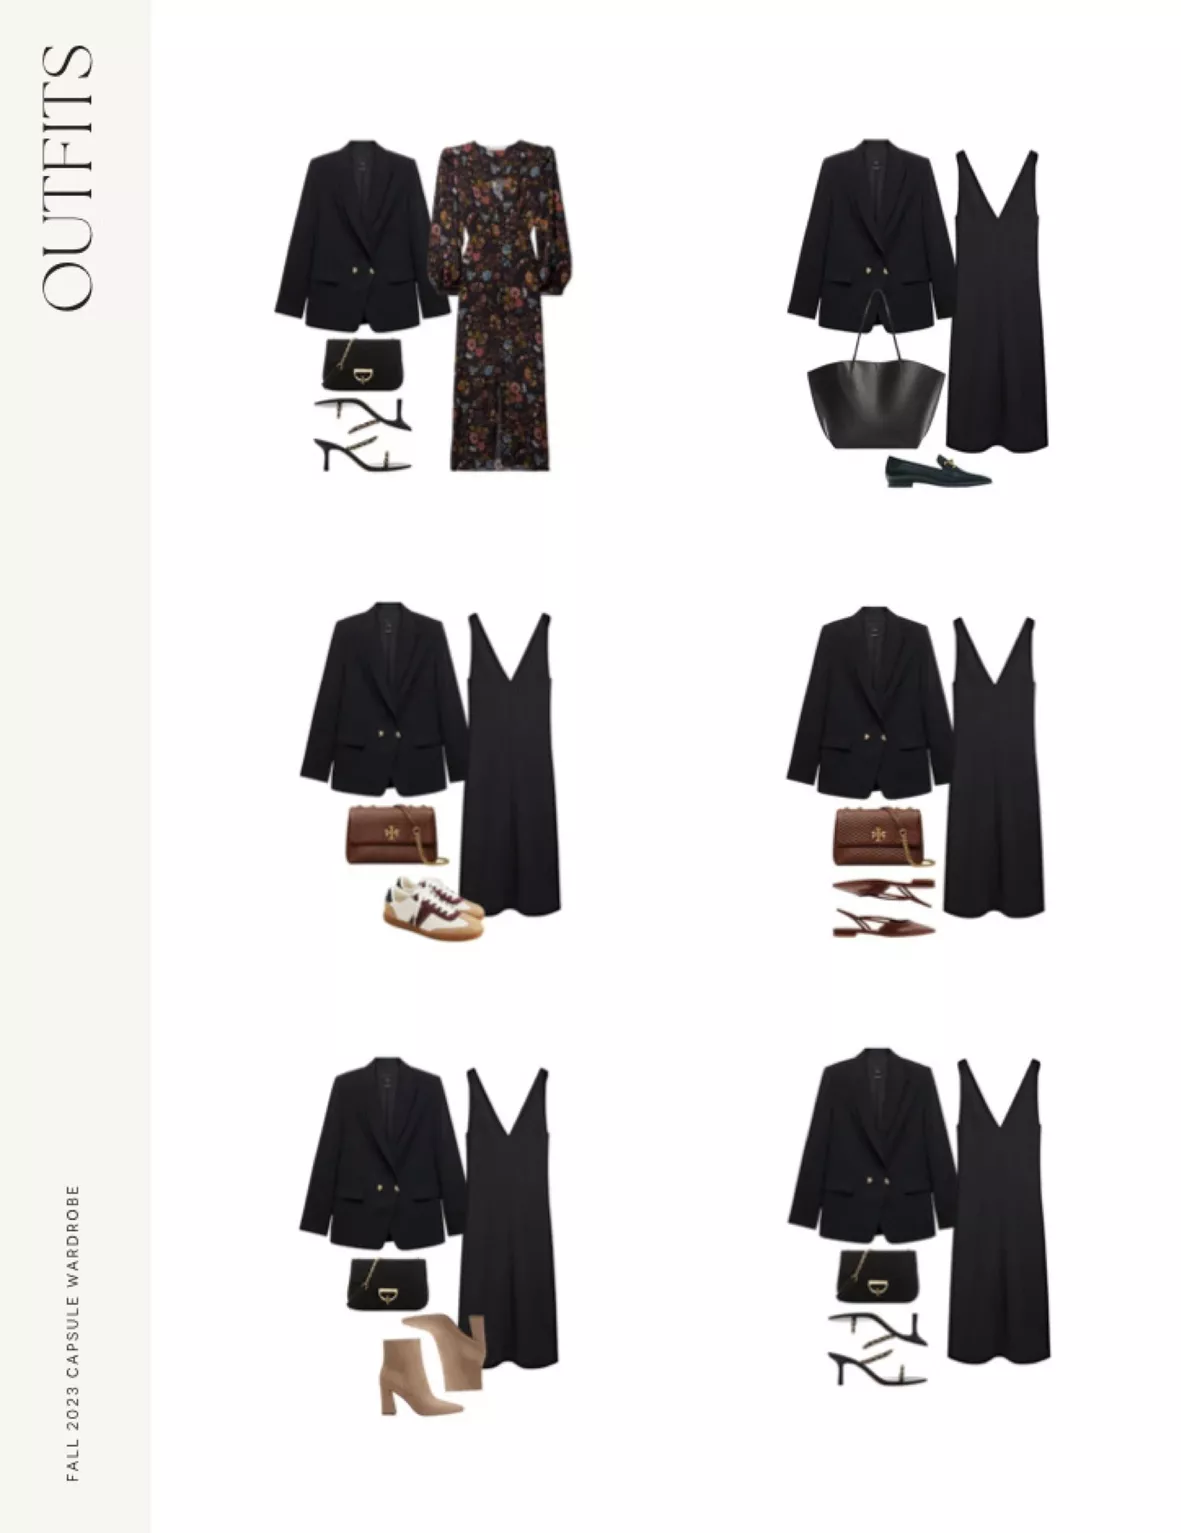 winter date night outfit ideas - Merritt Beck